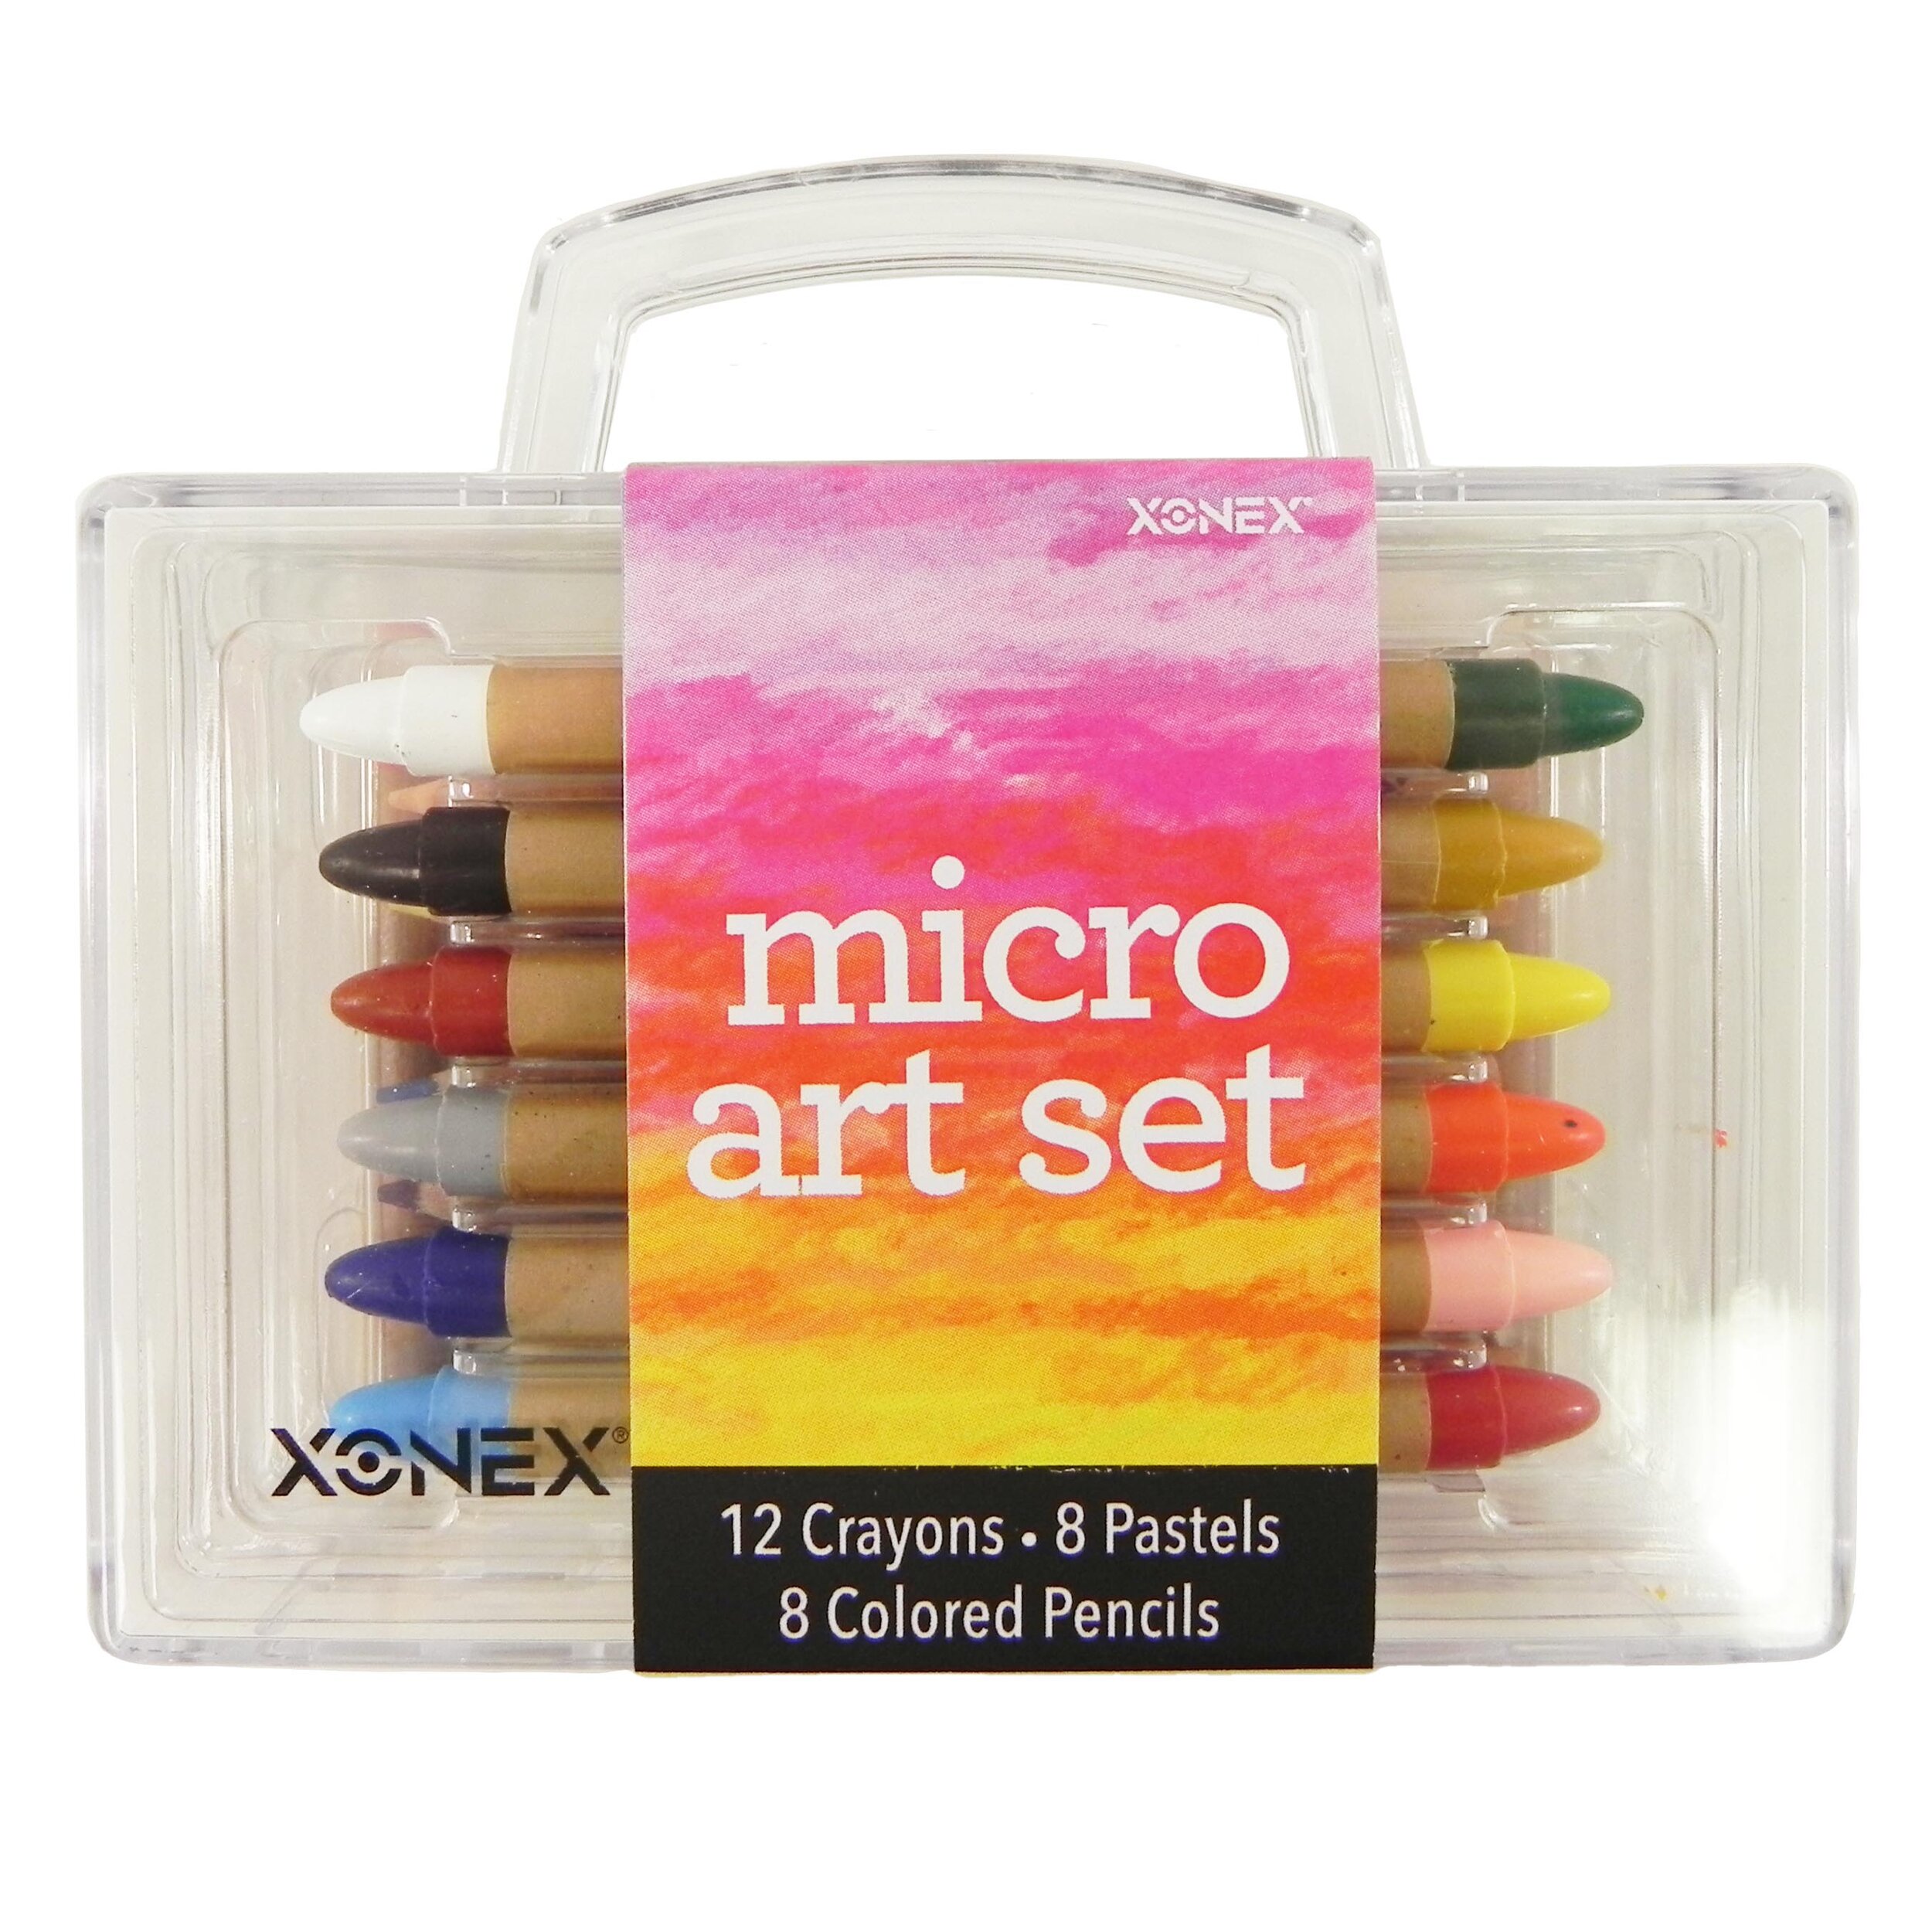 Micro art set.jpg